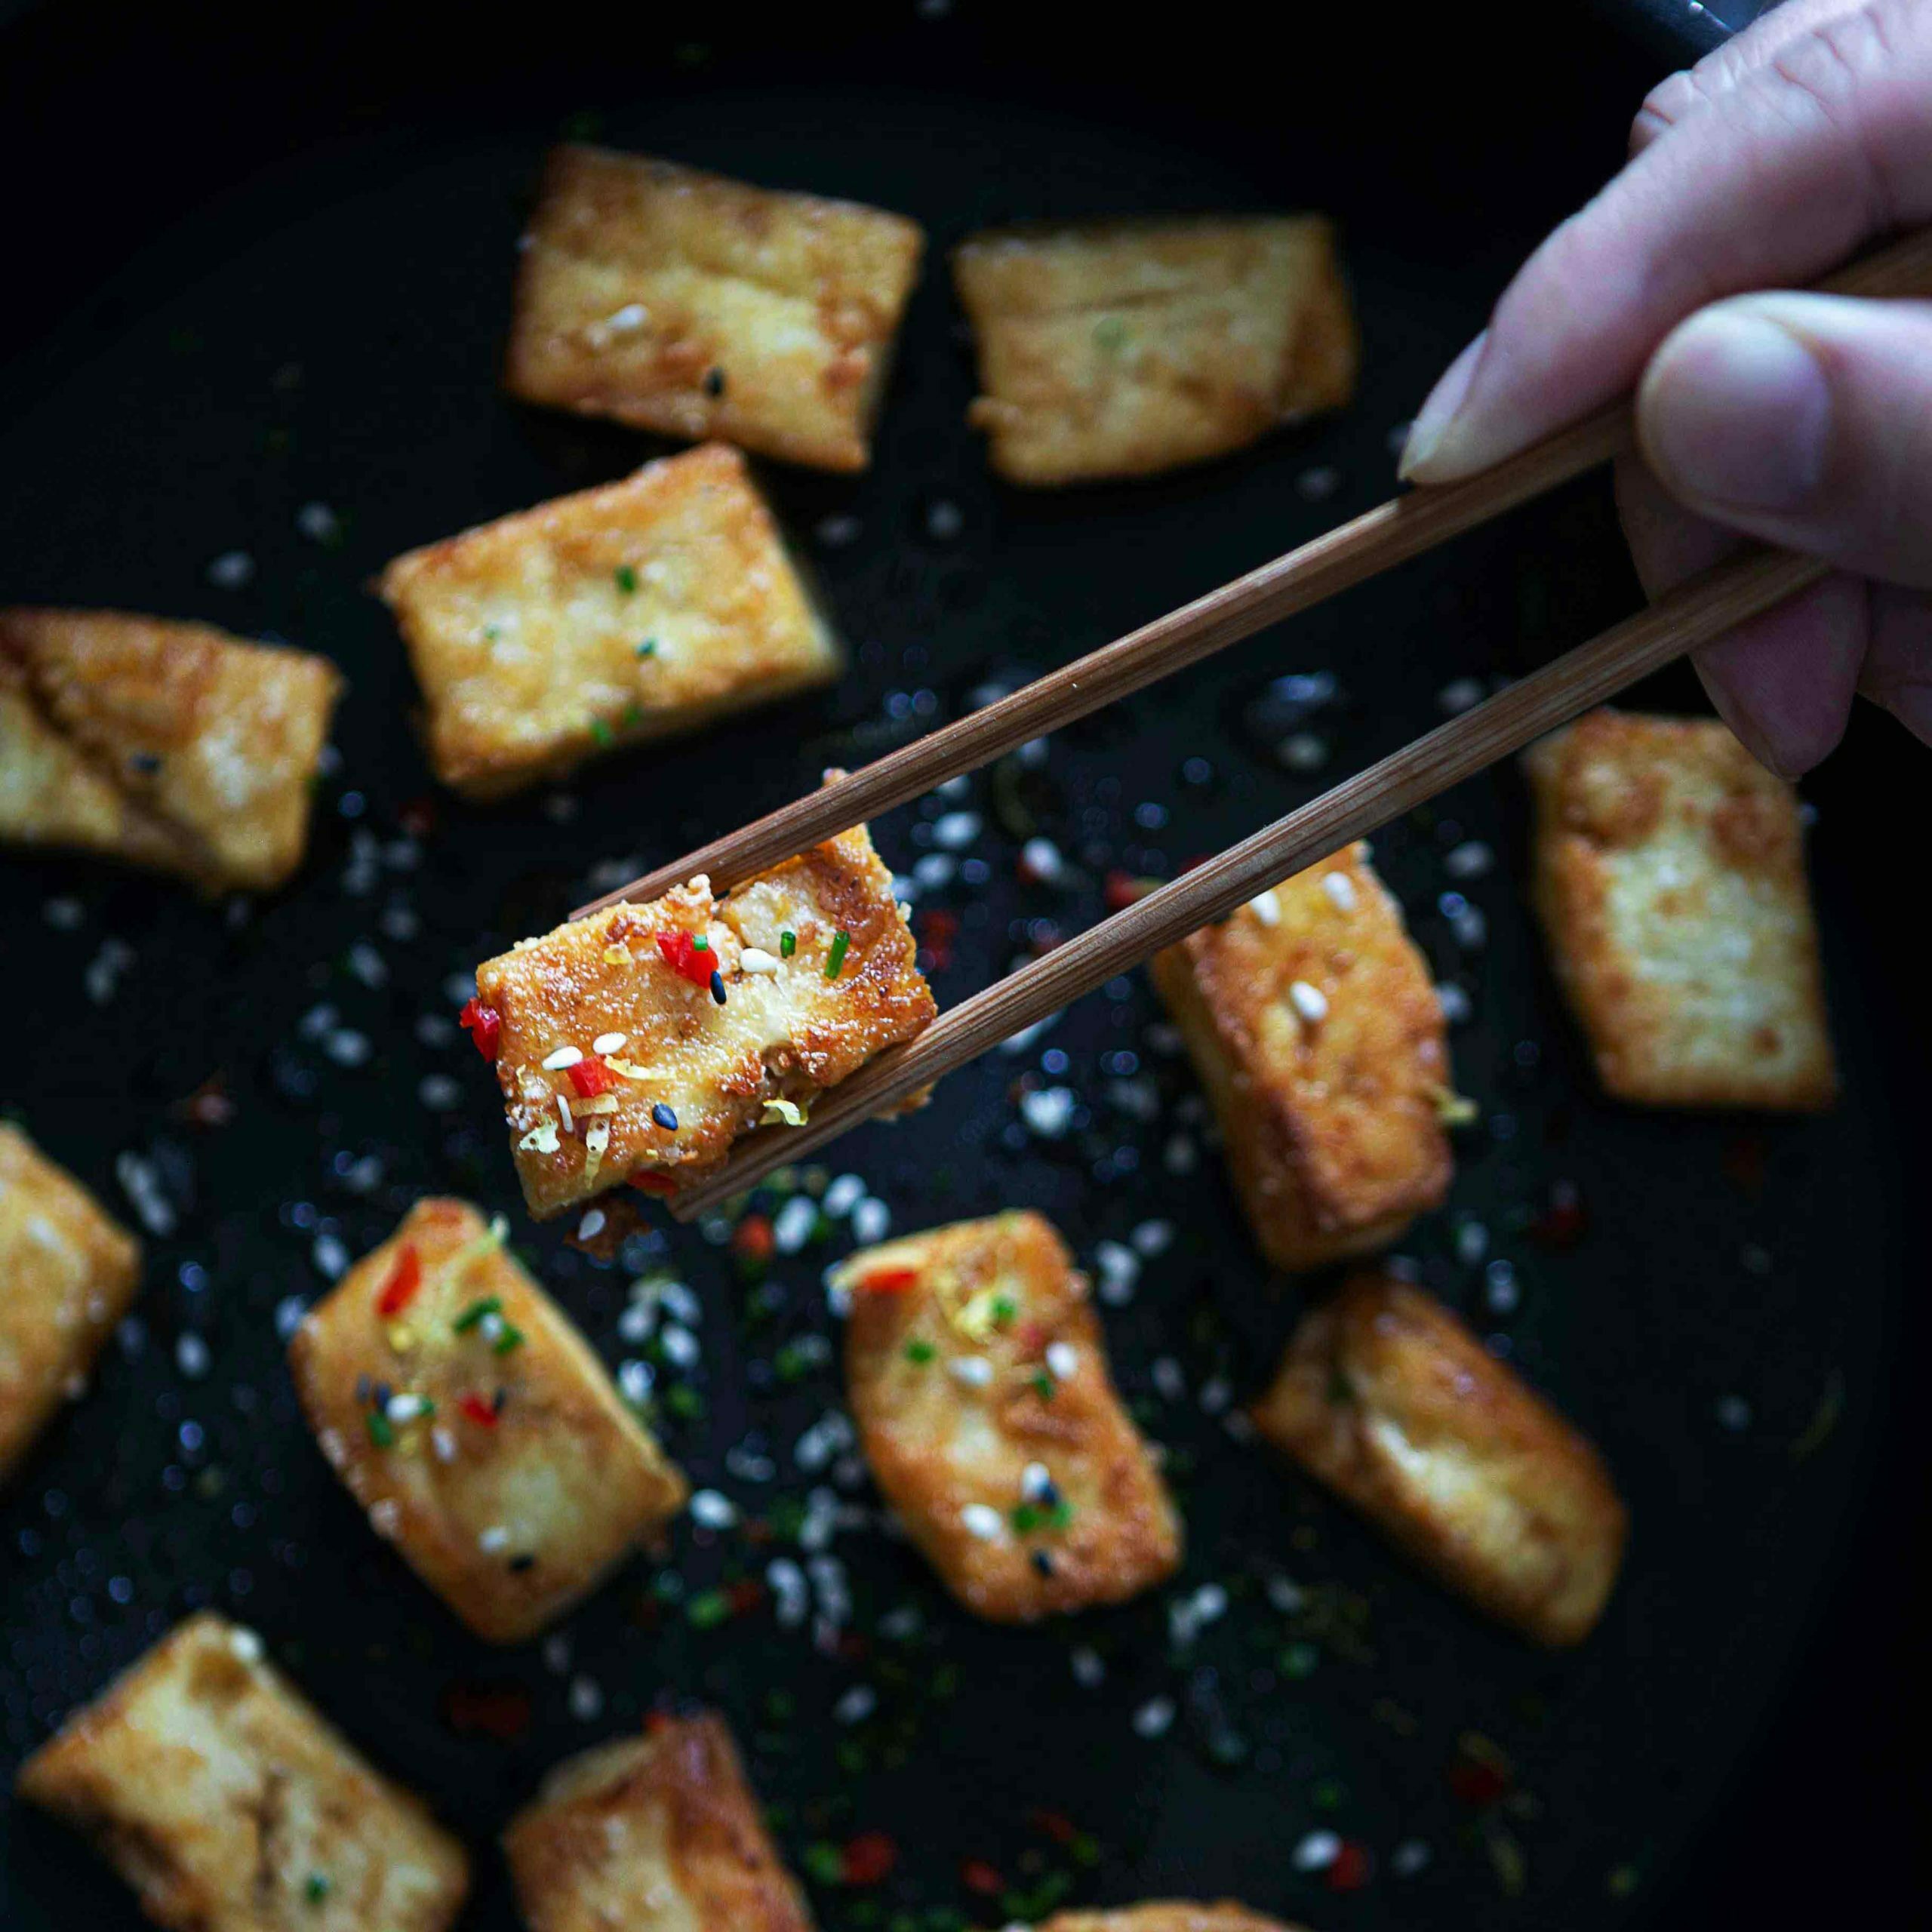 Tofun marinointi ja rapeaksi paistaminen